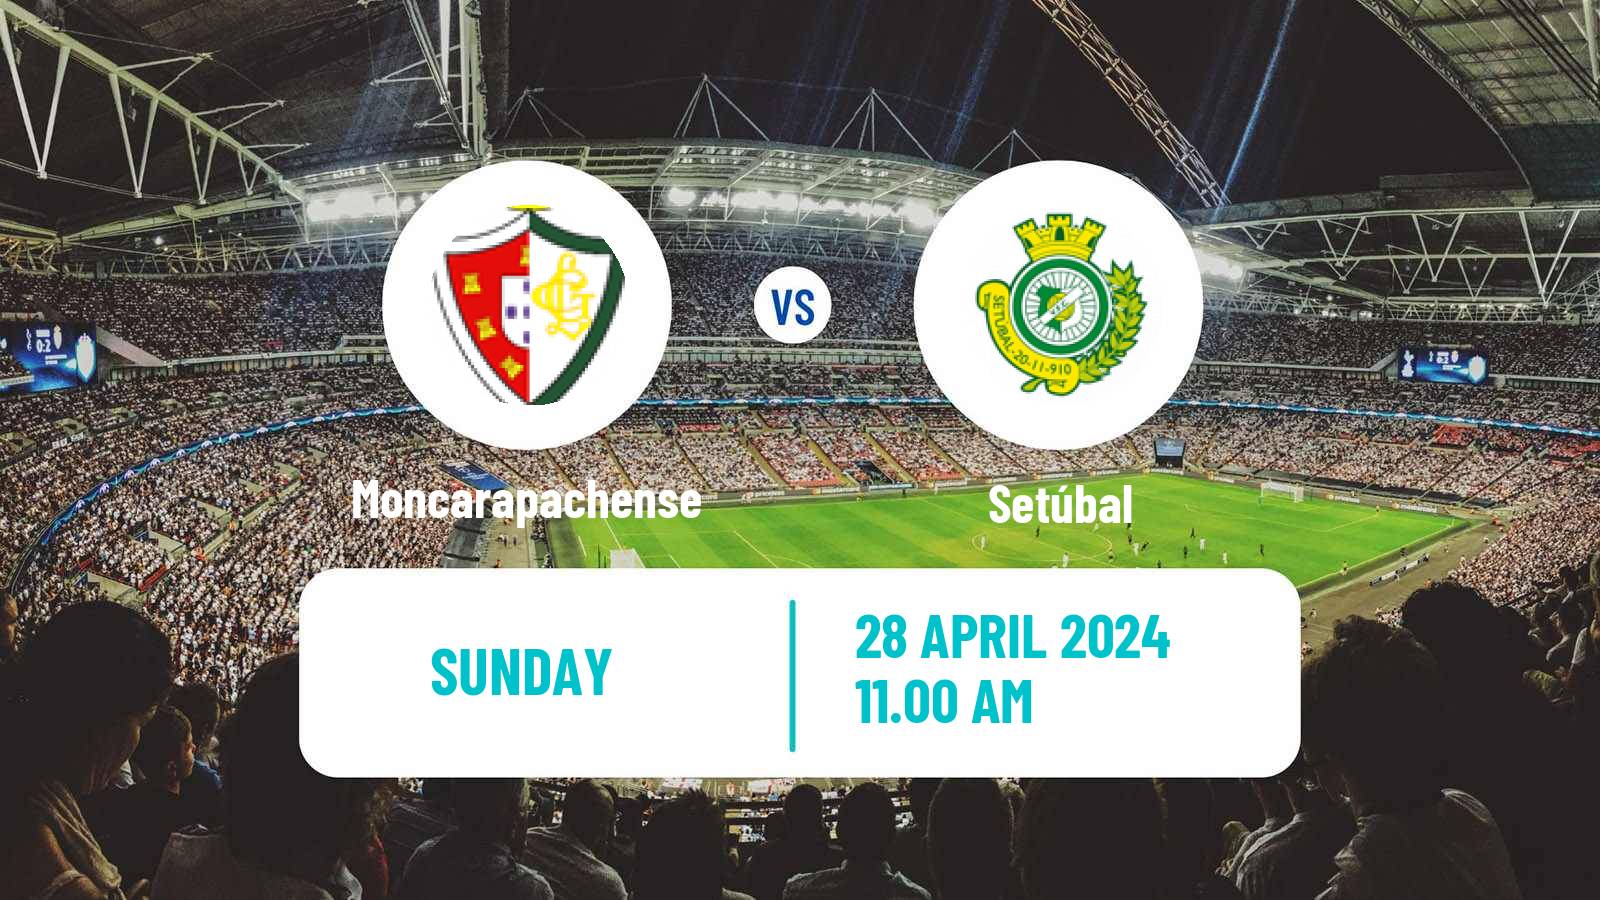 Soccer Campeonato de Portugal Promotion Group Moncarapachense - Setúbal